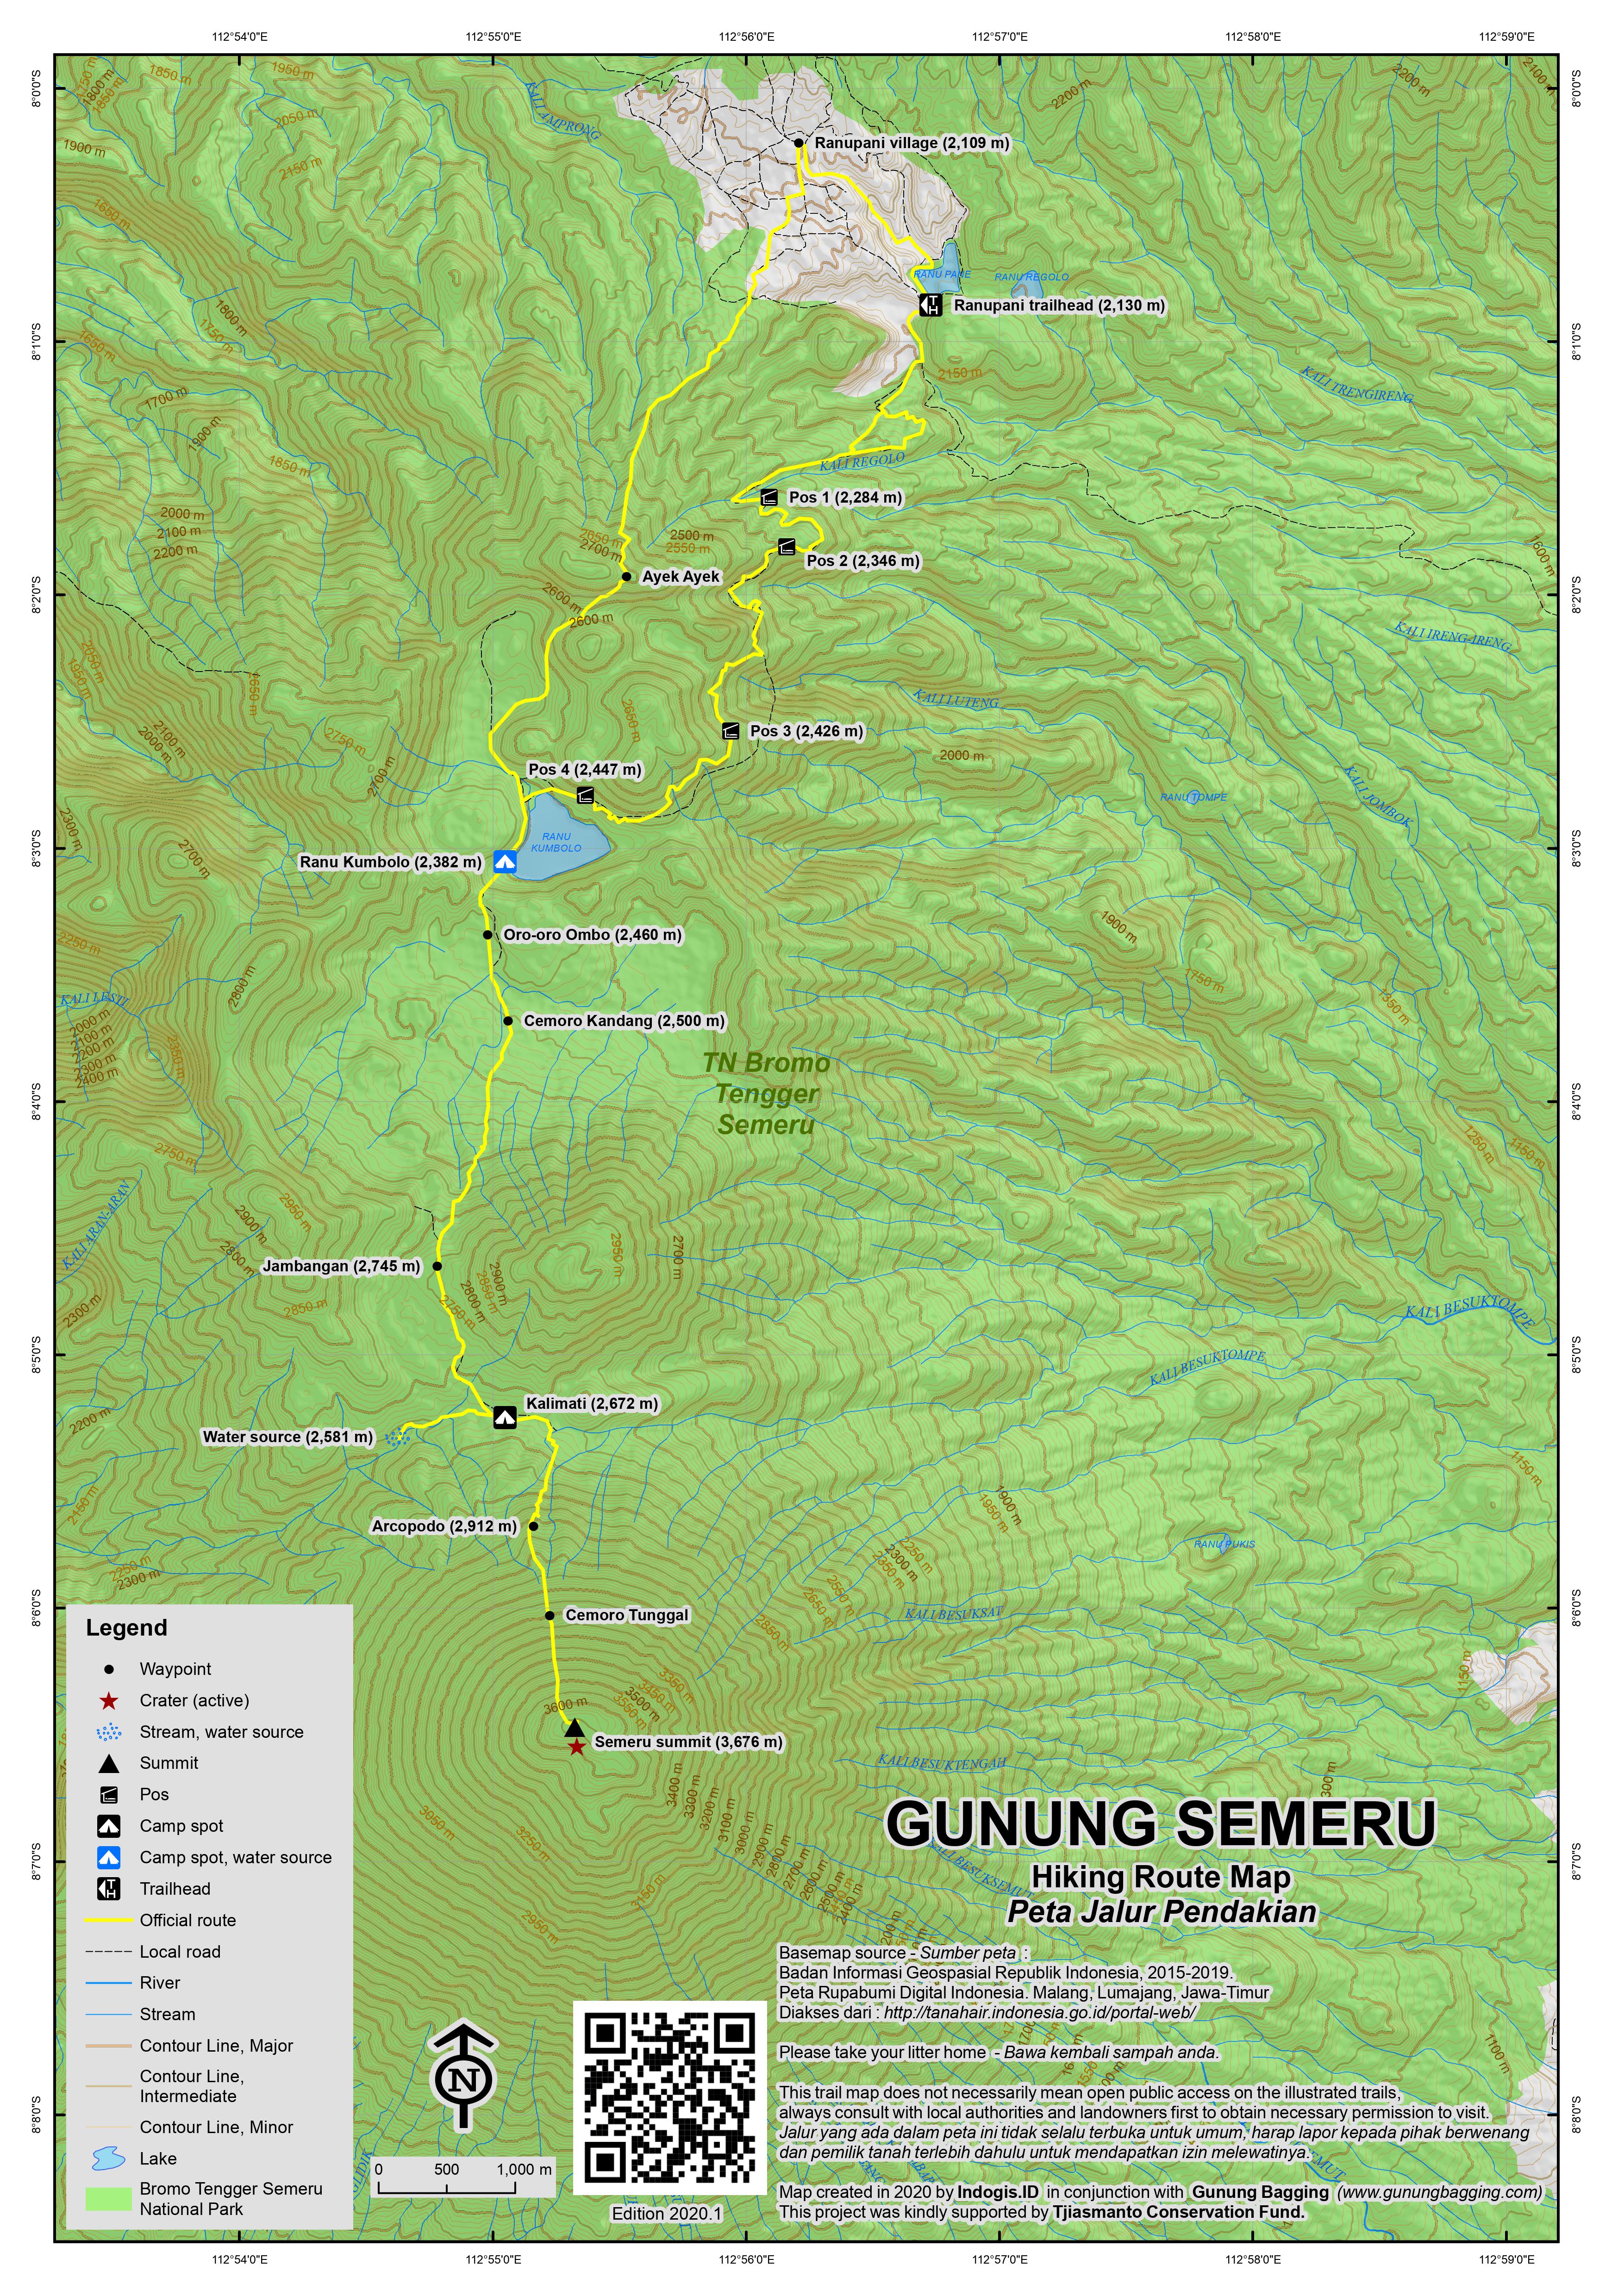 Peta Jalur Pendakian Gunung Semeru